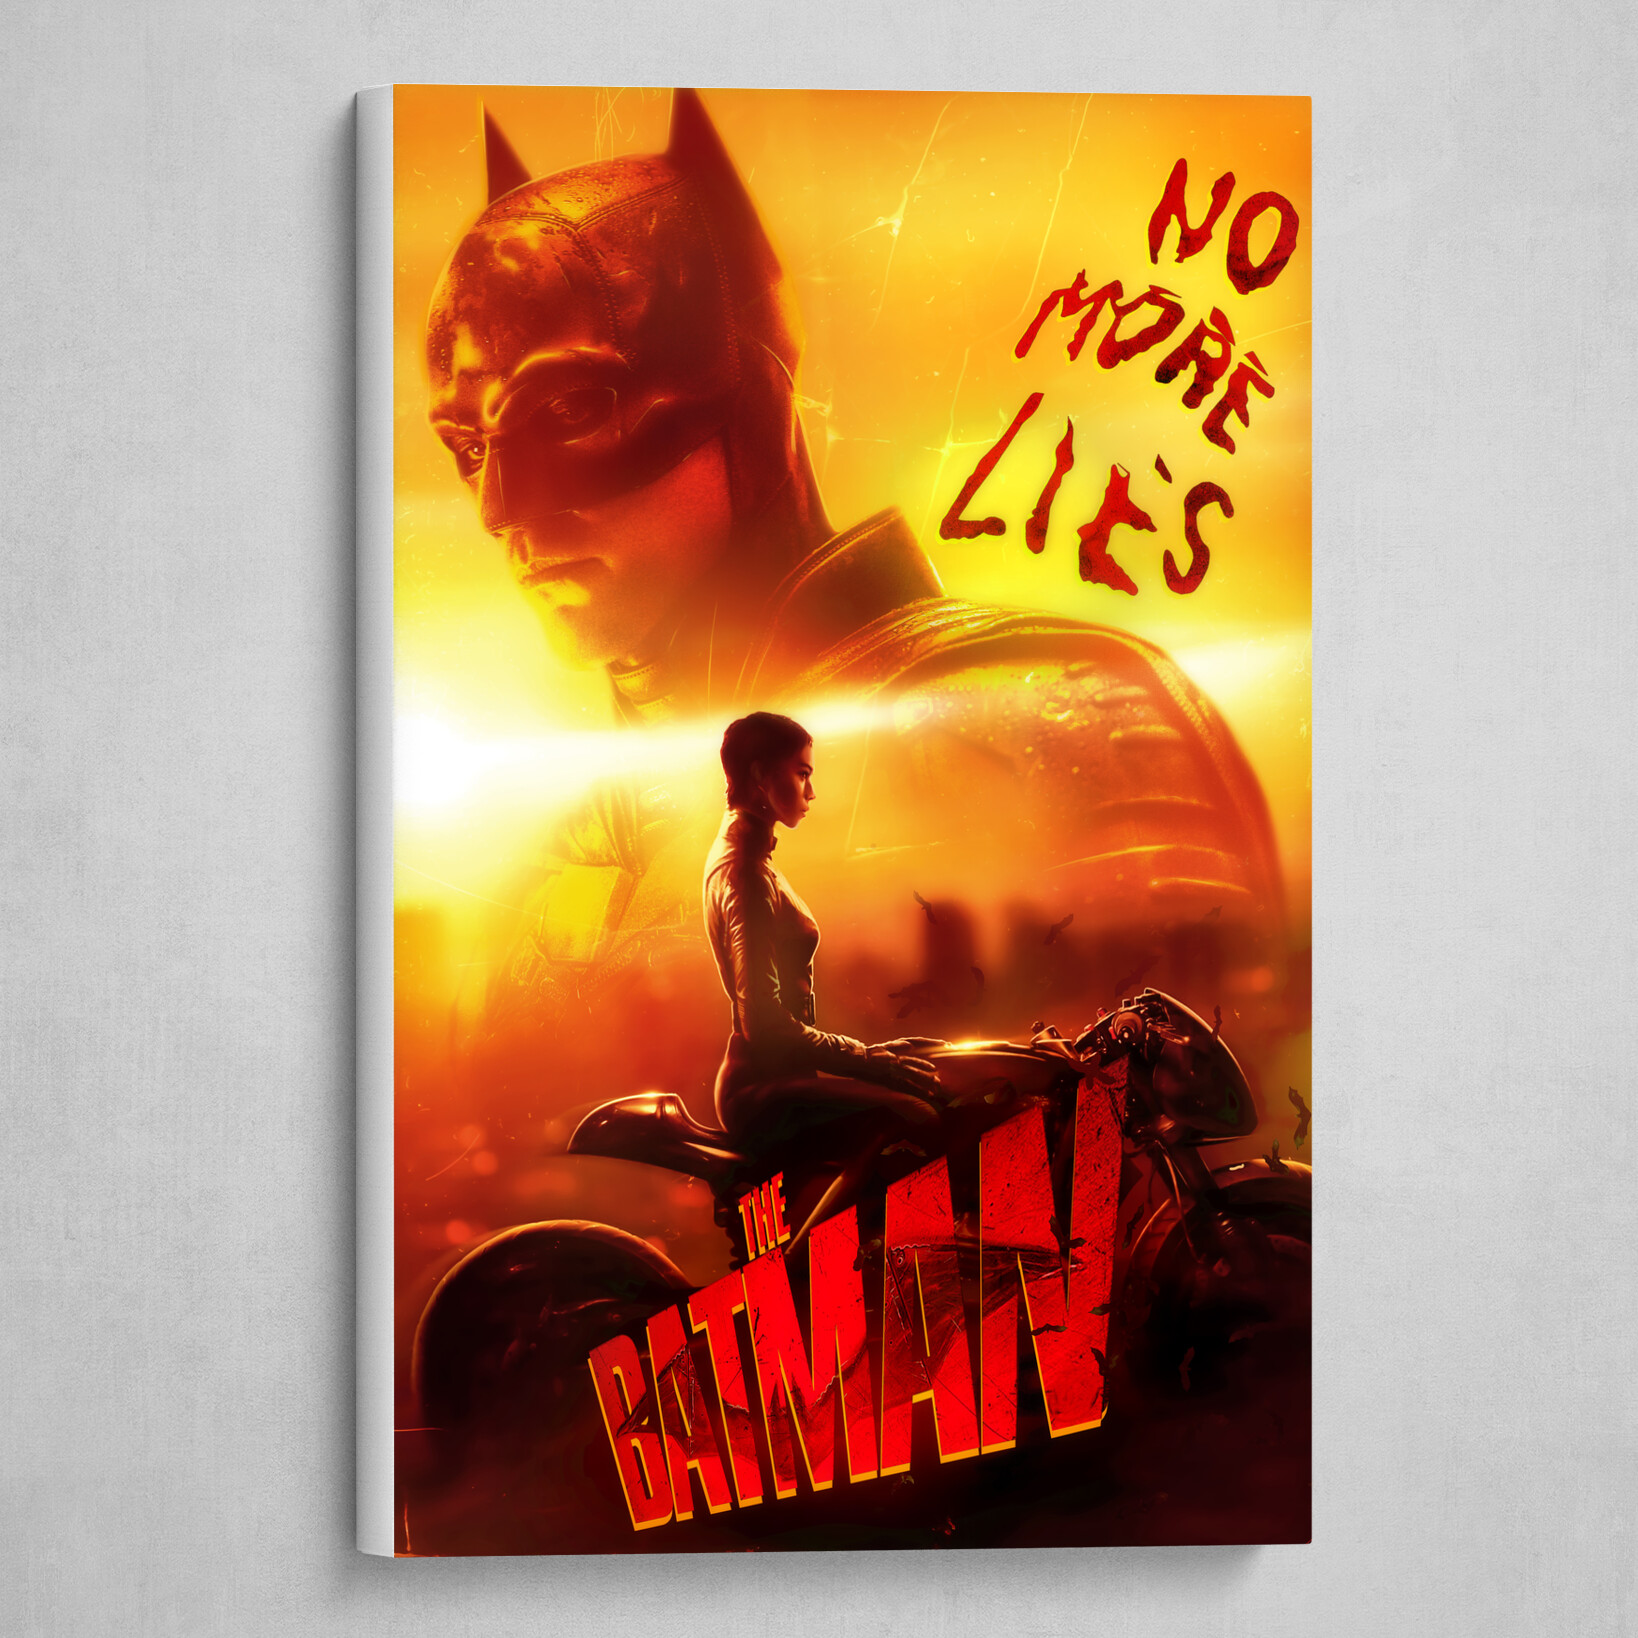 The Batman | No More Lies by Jaxson Derr